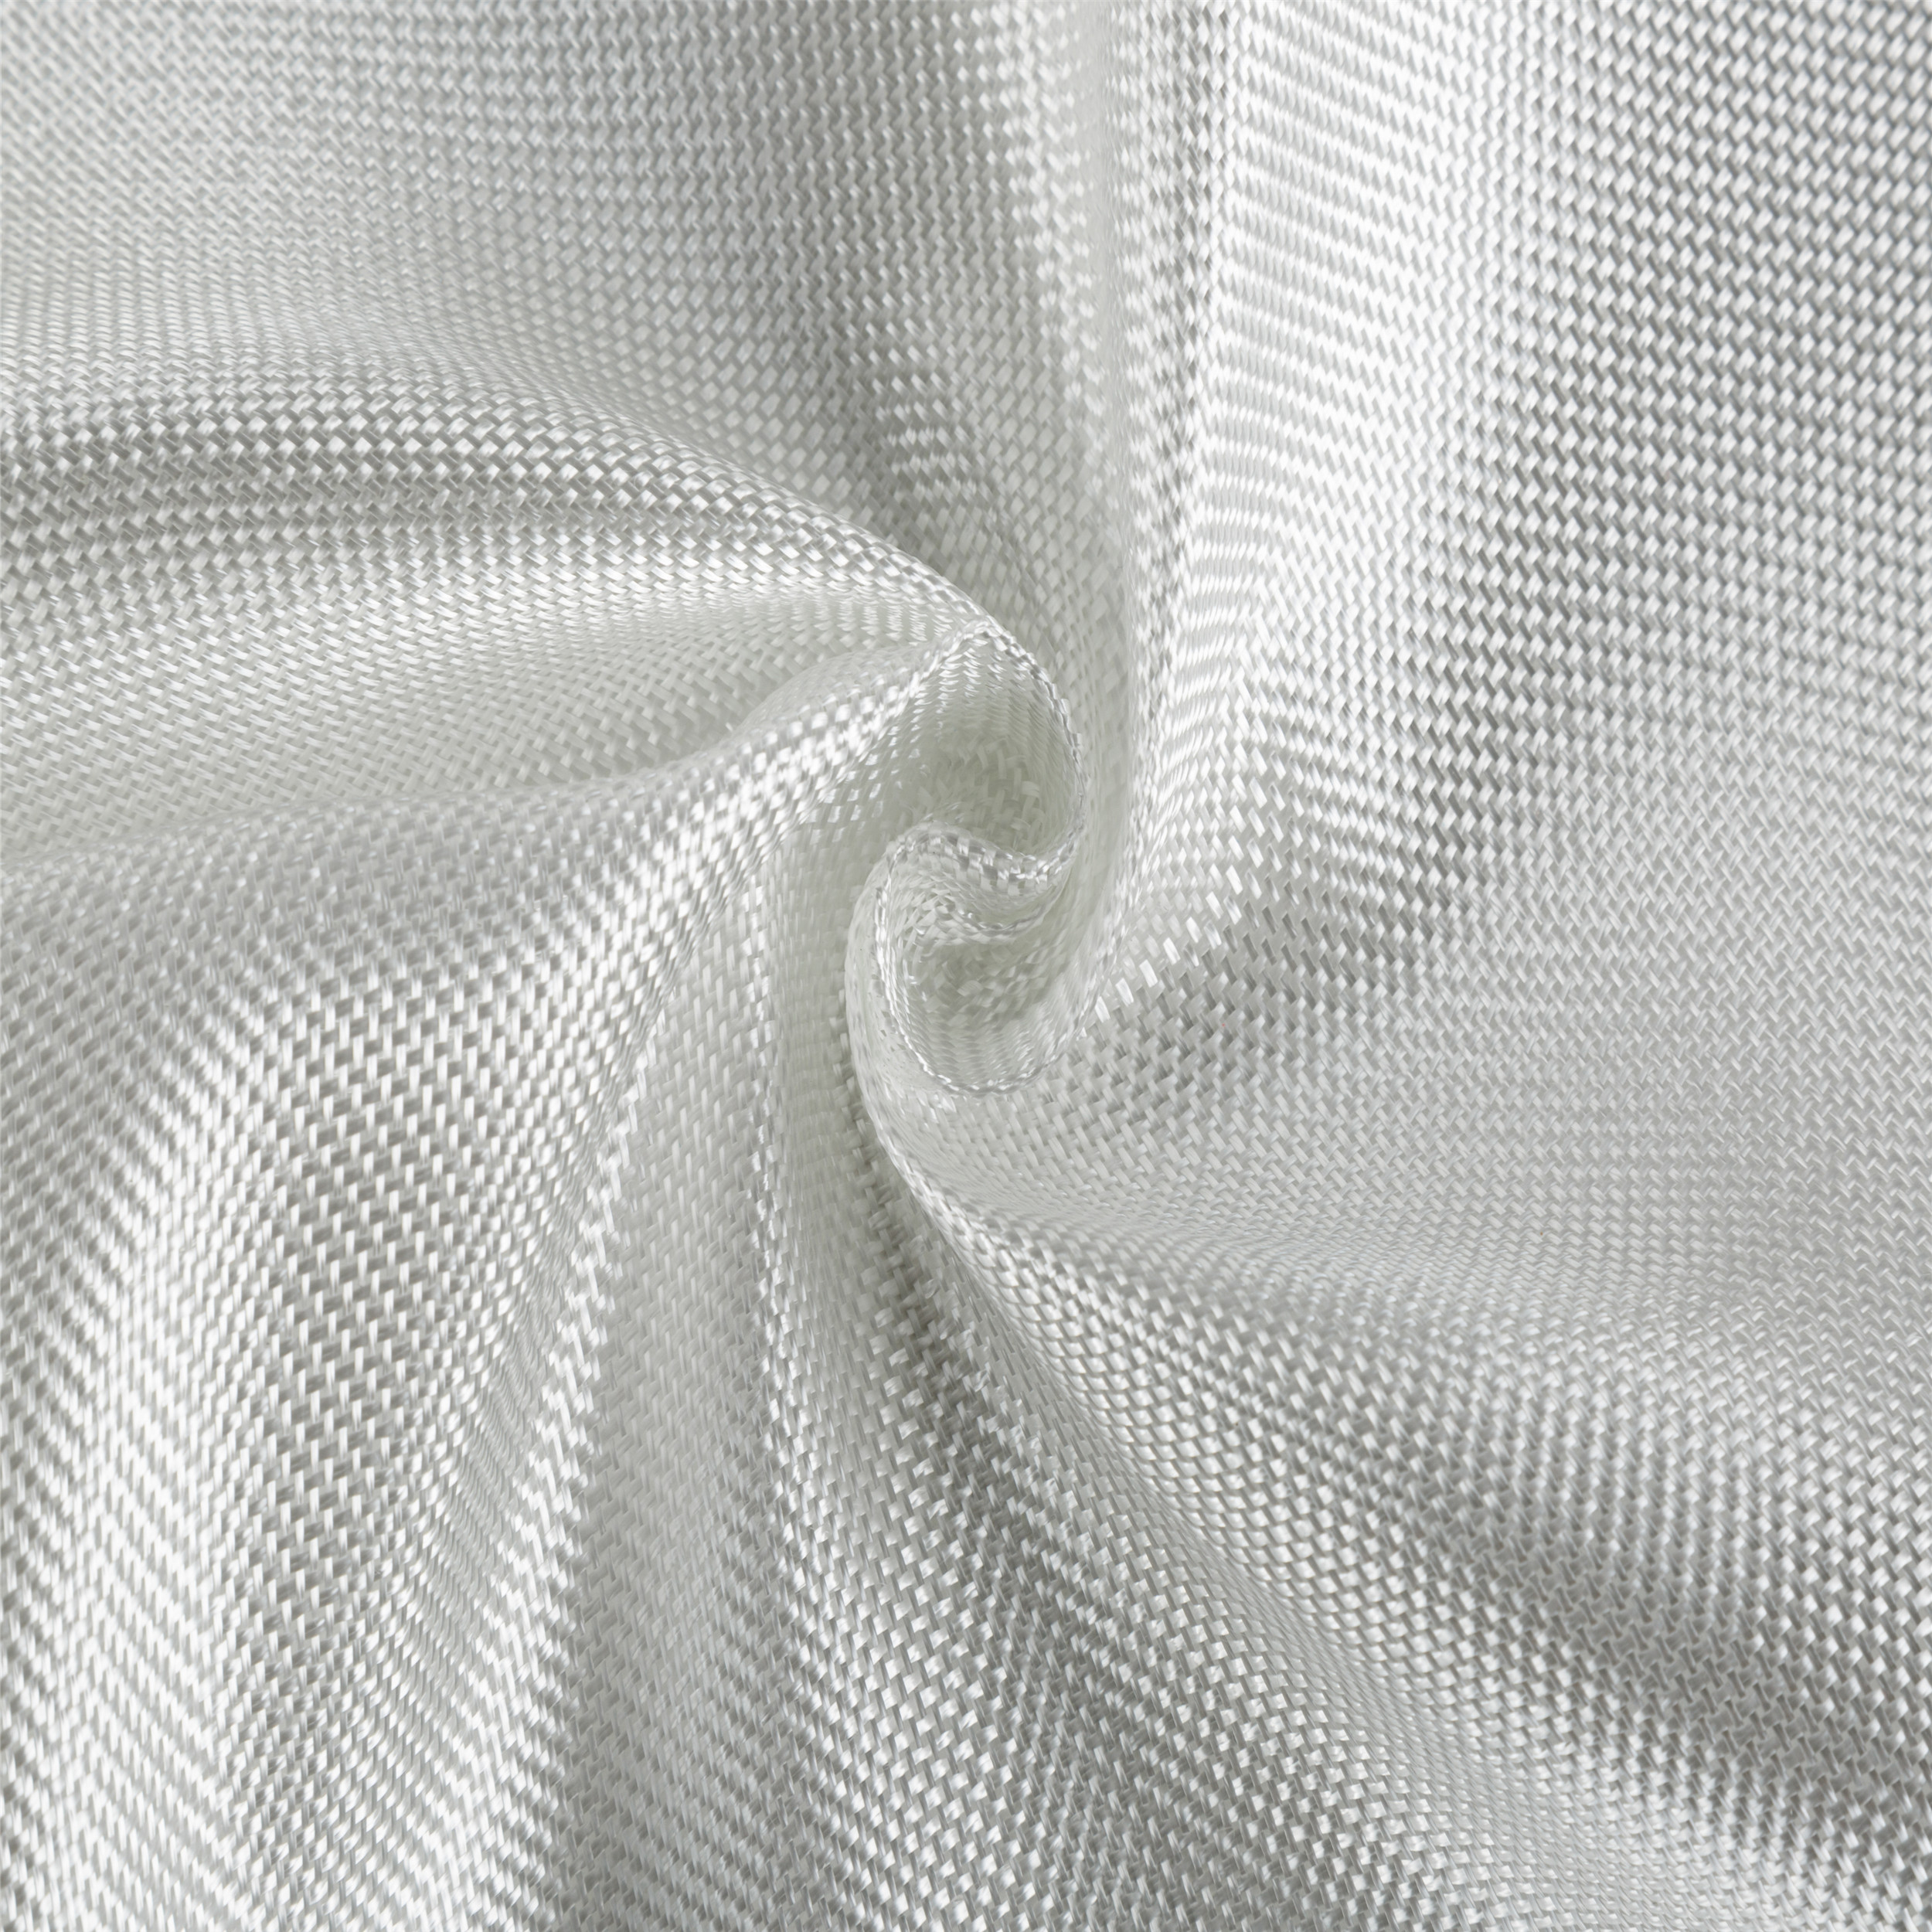 200gsm E-Glass Tear Resistant Plain Woven Fiberglass Fabric Cut-resistant Reinforce Cloth 1m width